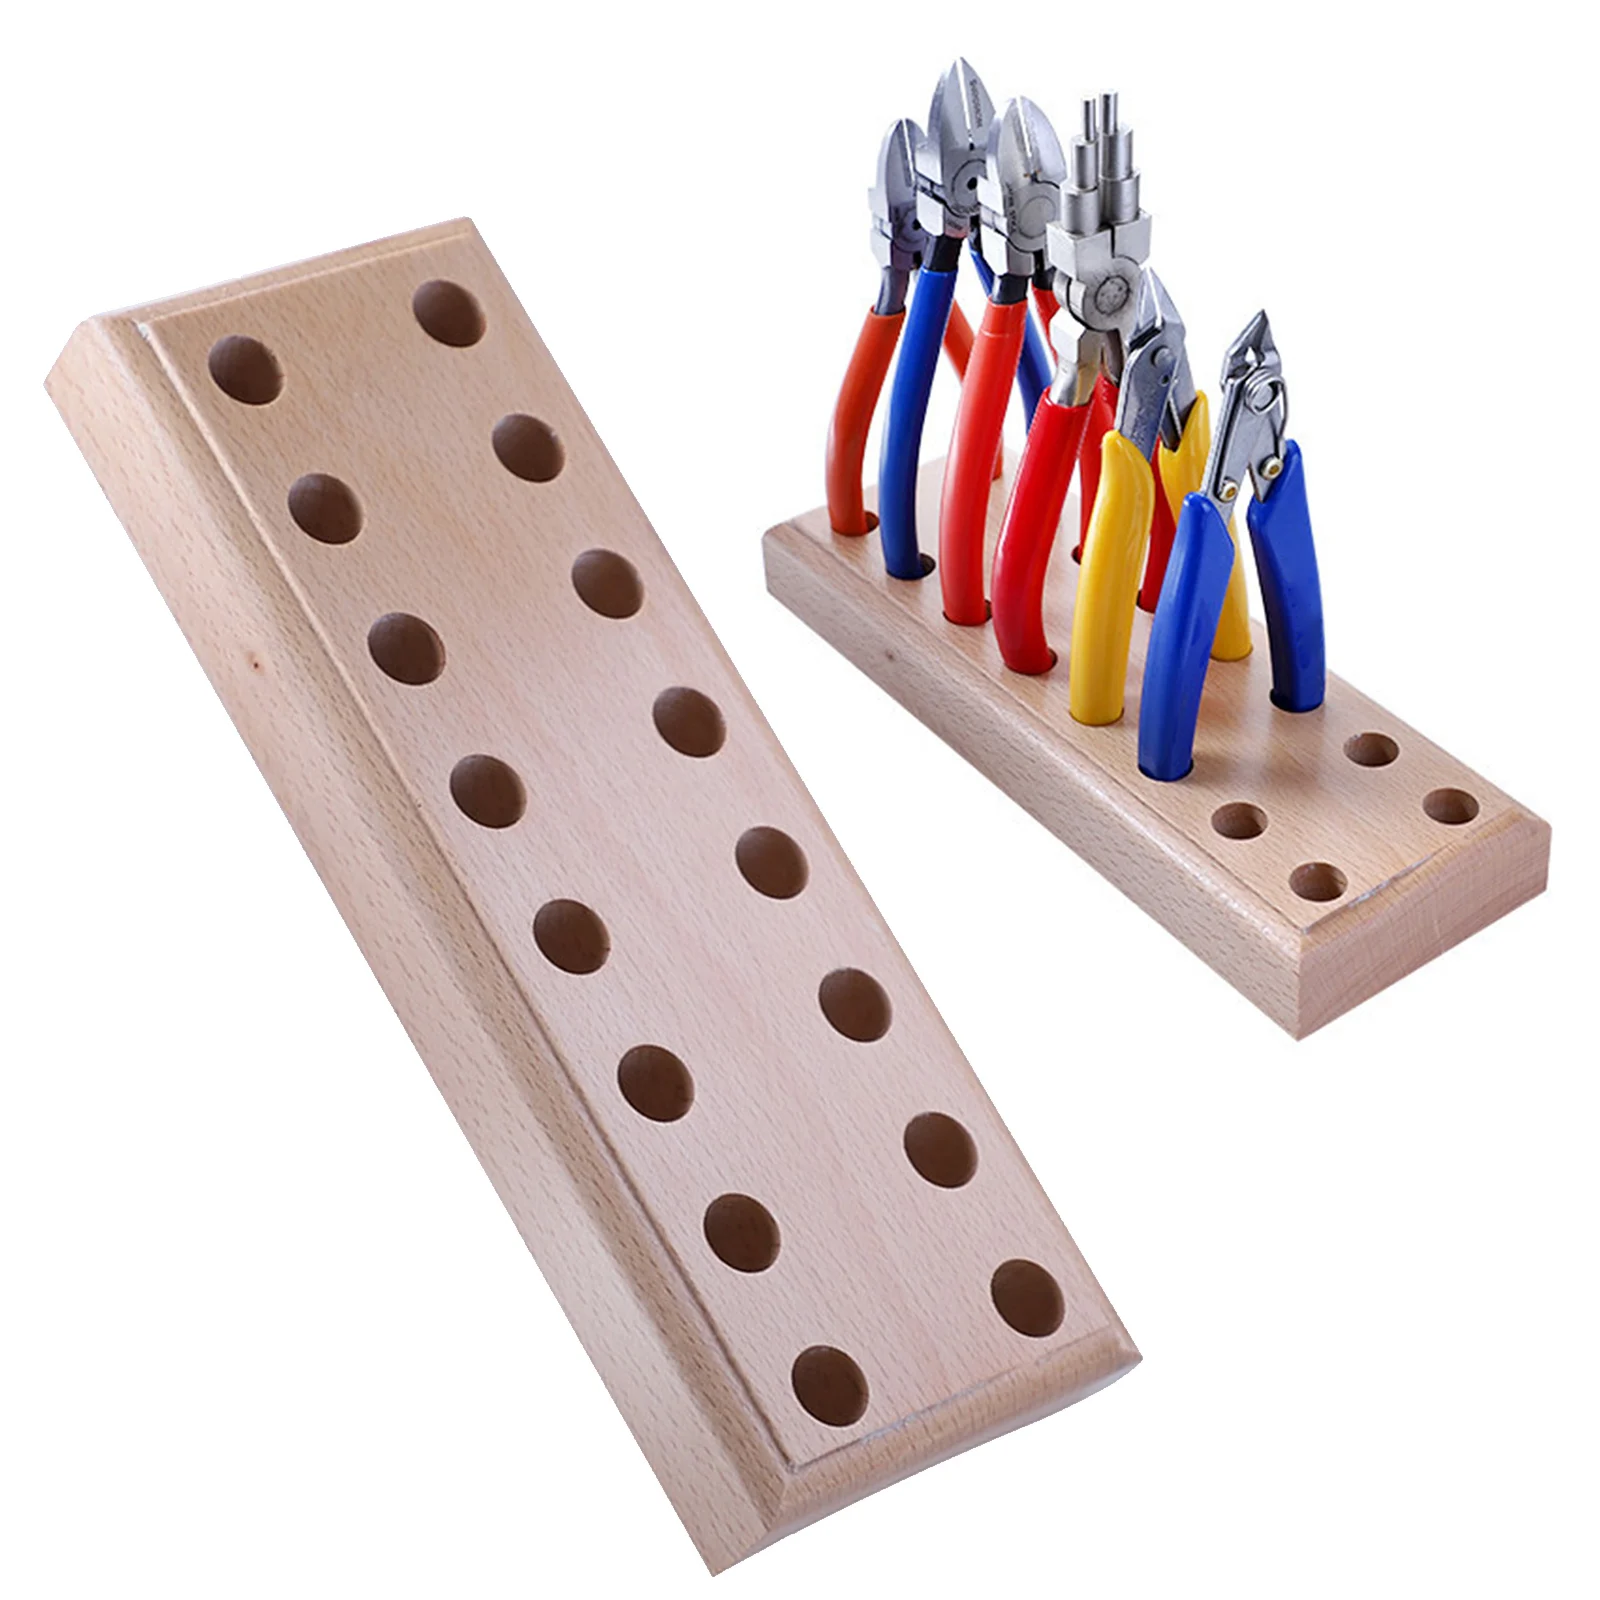 Wood Plier Block Desktop Plier Organizer Pliers Holder Base for 8 Pliers Display Wood Pallet DIY Crafting Repairing Accs